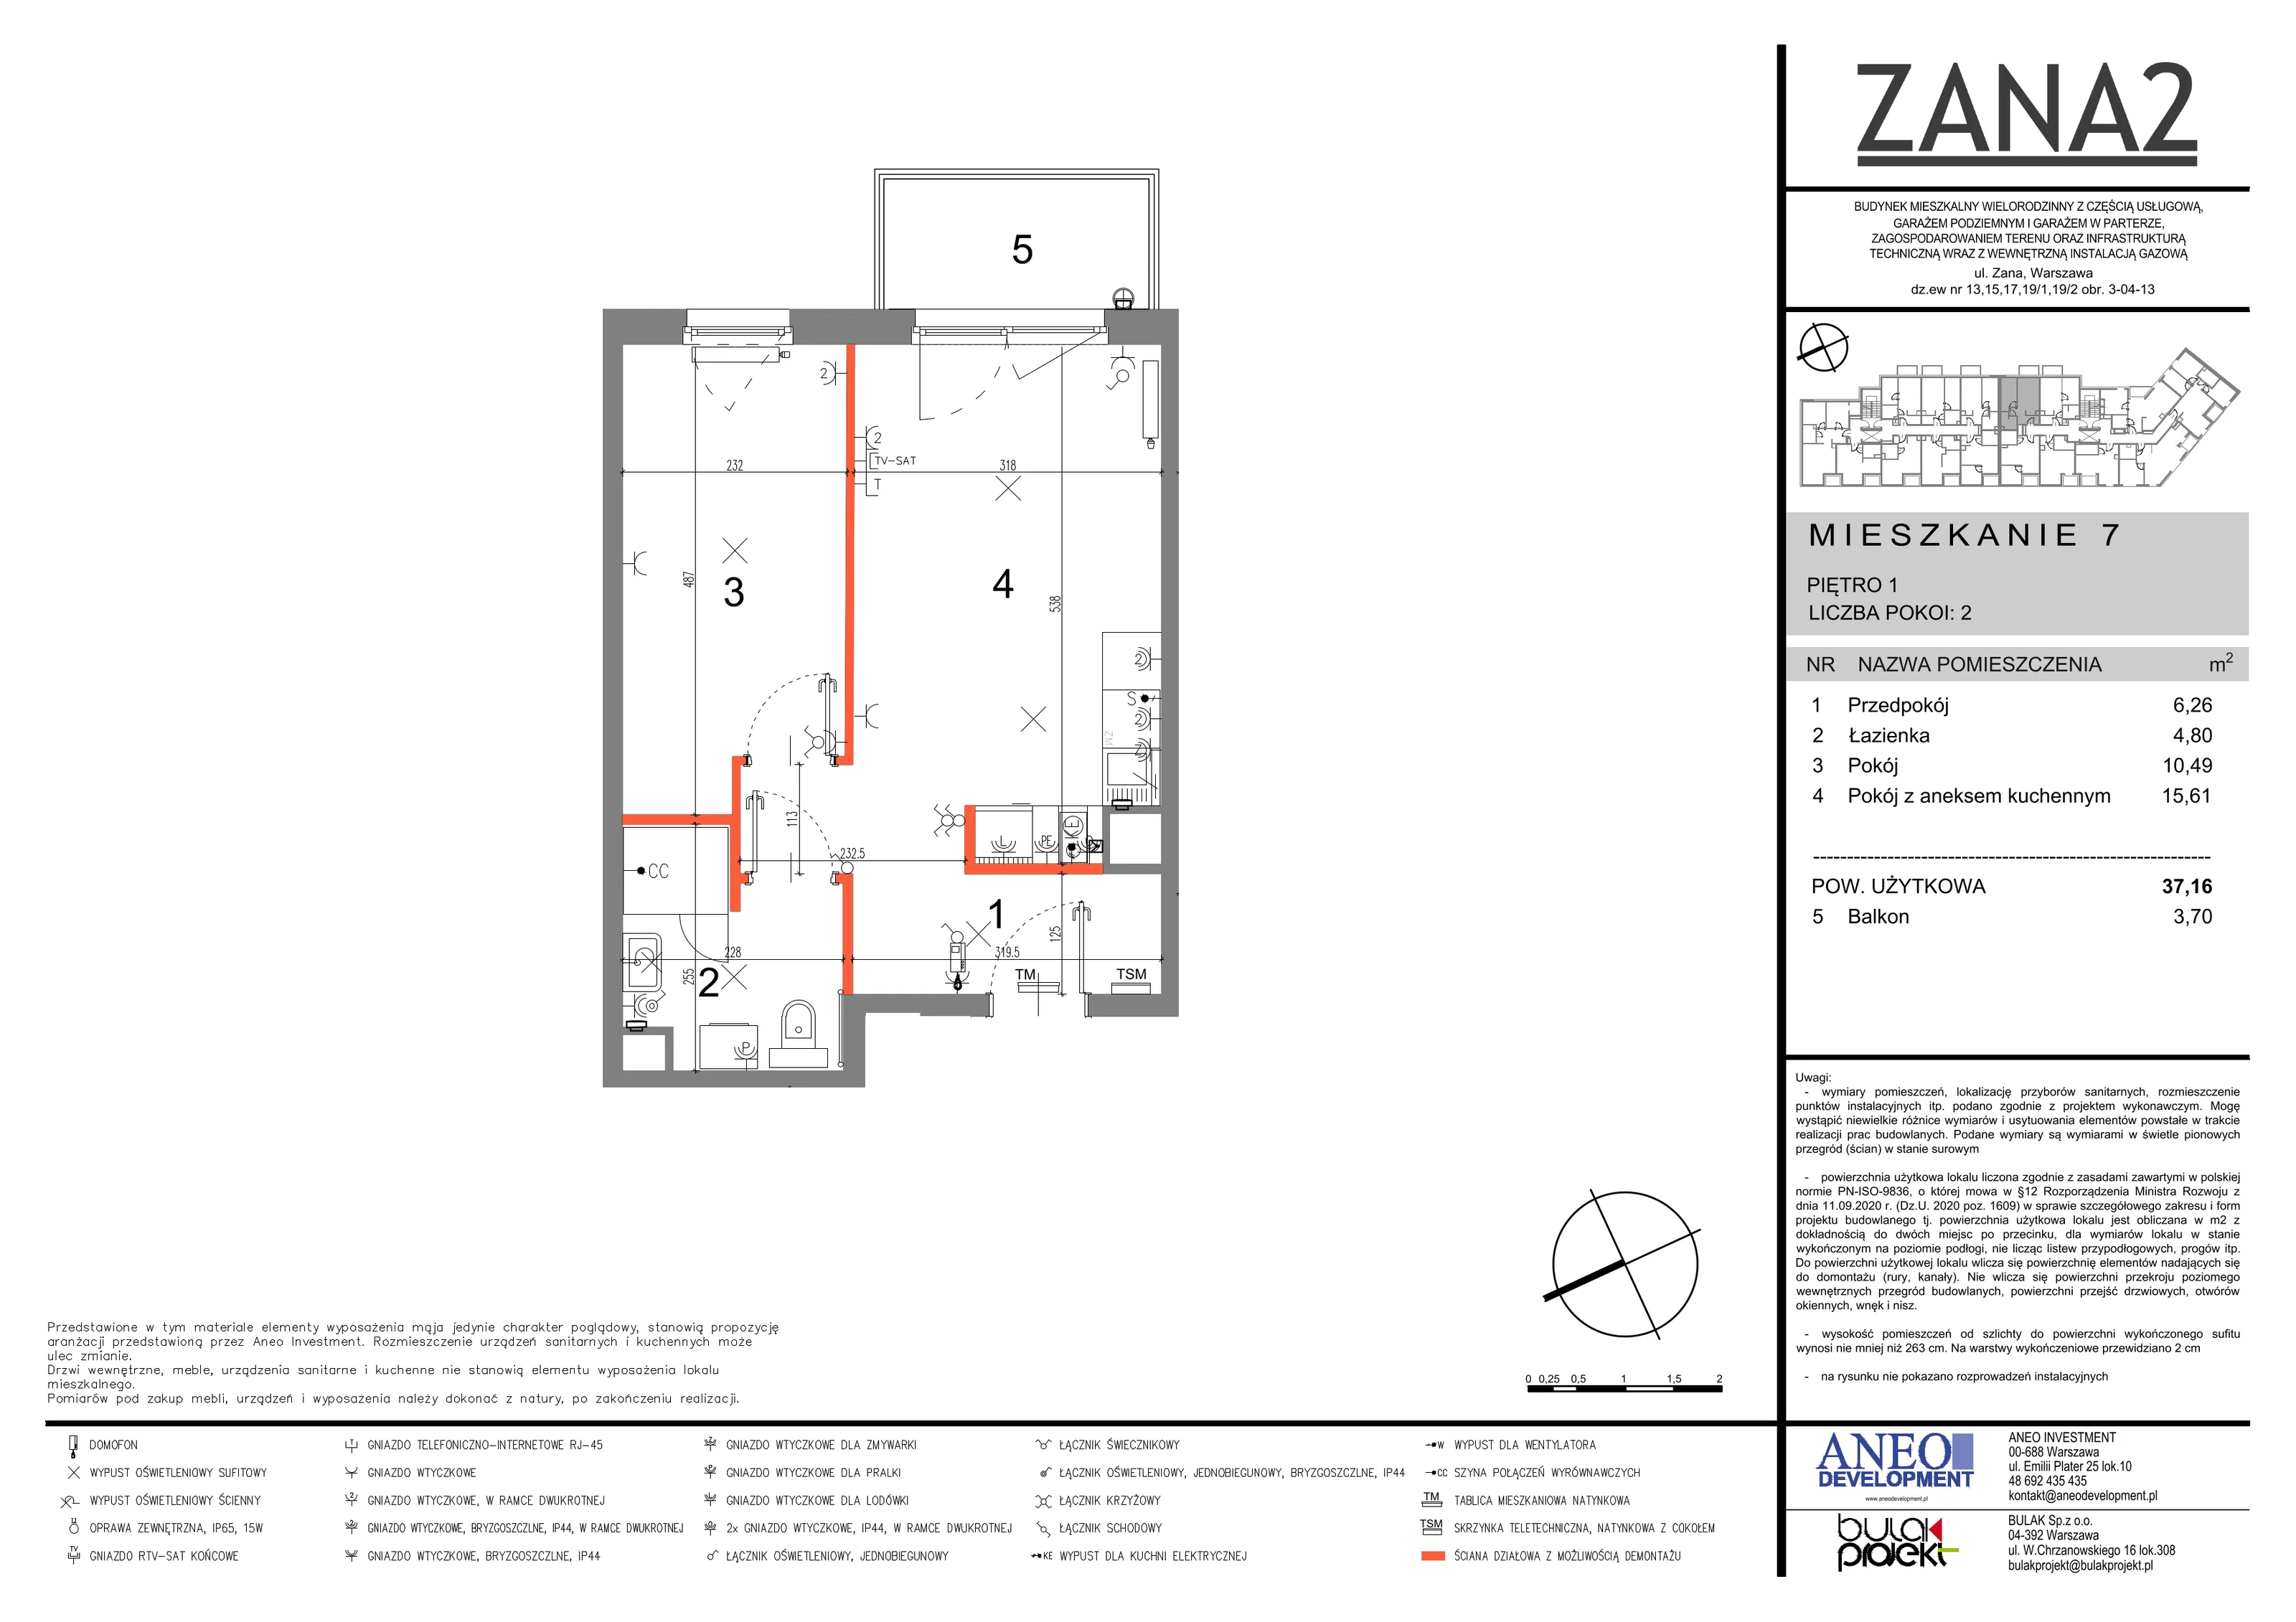 Mieszkanie 37,16 m², piętro 1, oferta nr 7, Zana 2, Warszawa, Praga Południe, Gocławek, ul. Tomasza Zana